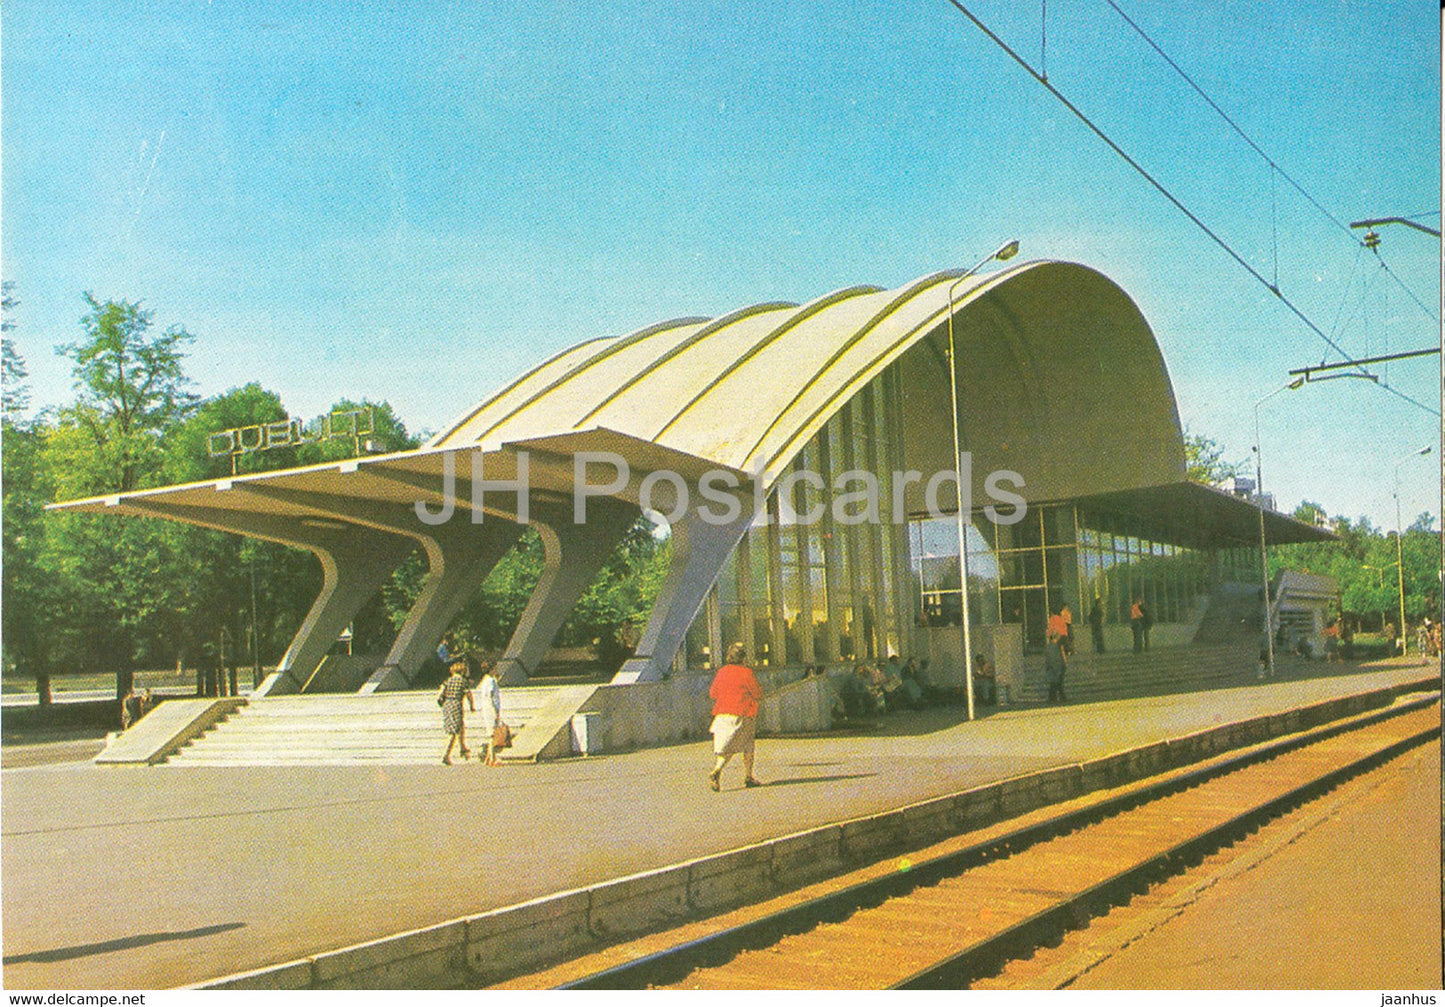 Jurmala - Dubulti railway station - 1986 - Latvia USSR - unused - JH Postcards